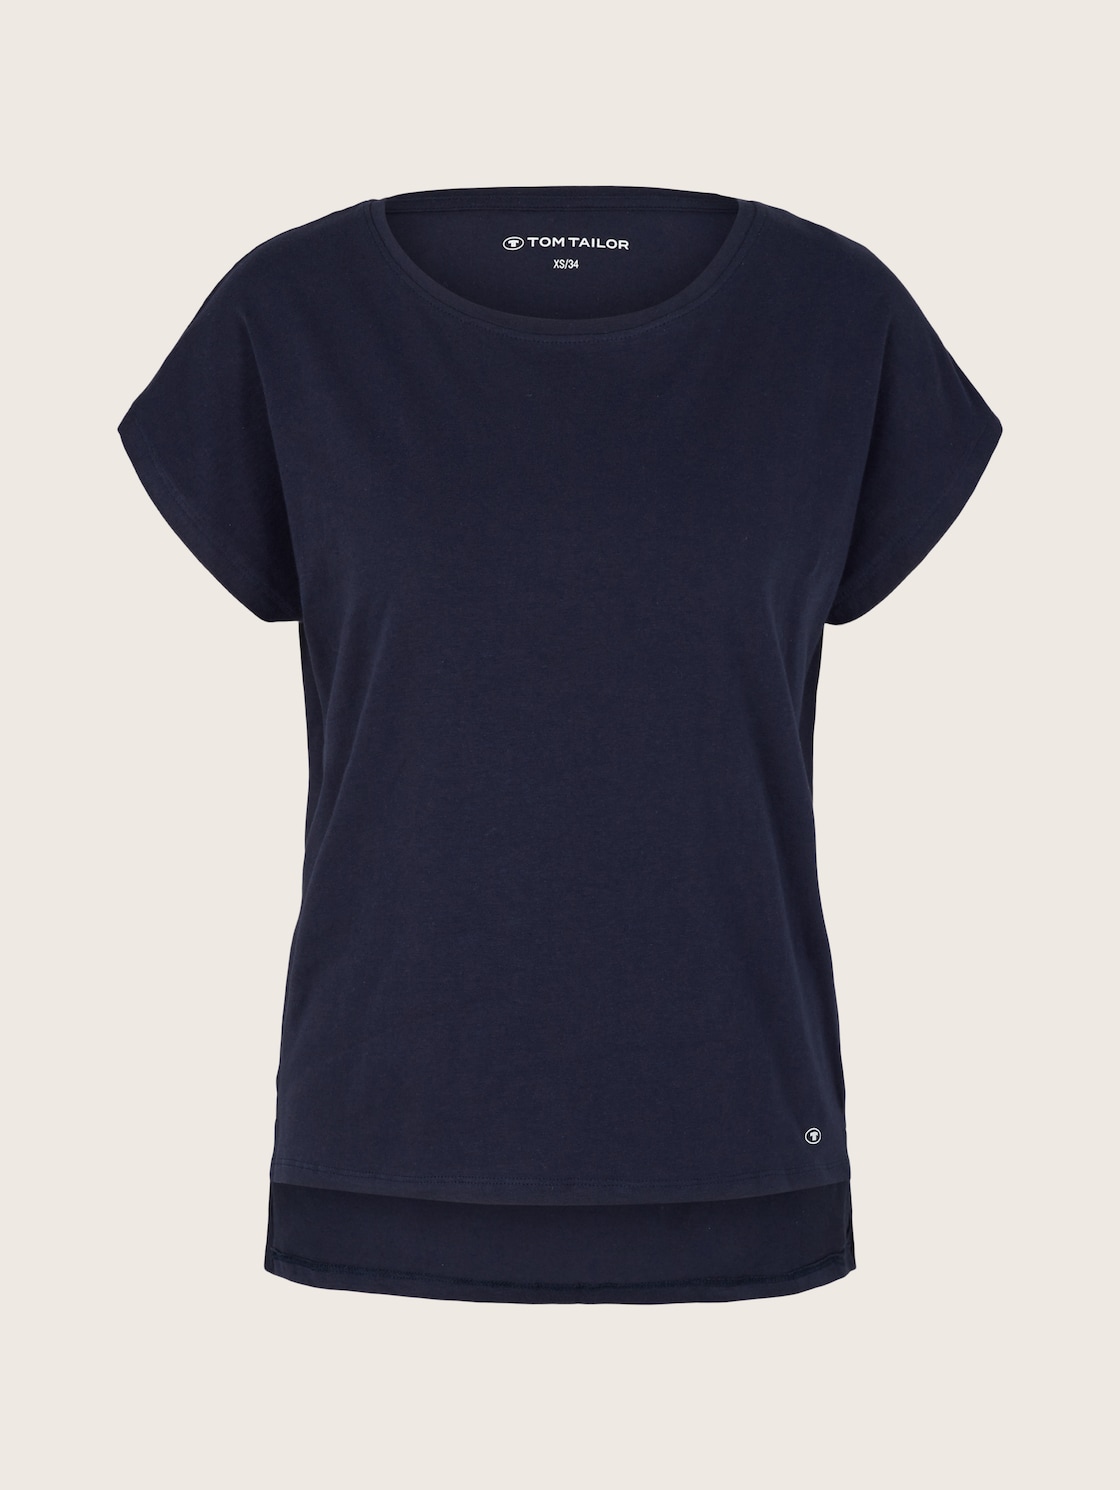 TOM TAILOR Damen T-Shirt mit Logo-Print, blau, Logo Print, Gr. 38 von Tom Tailor